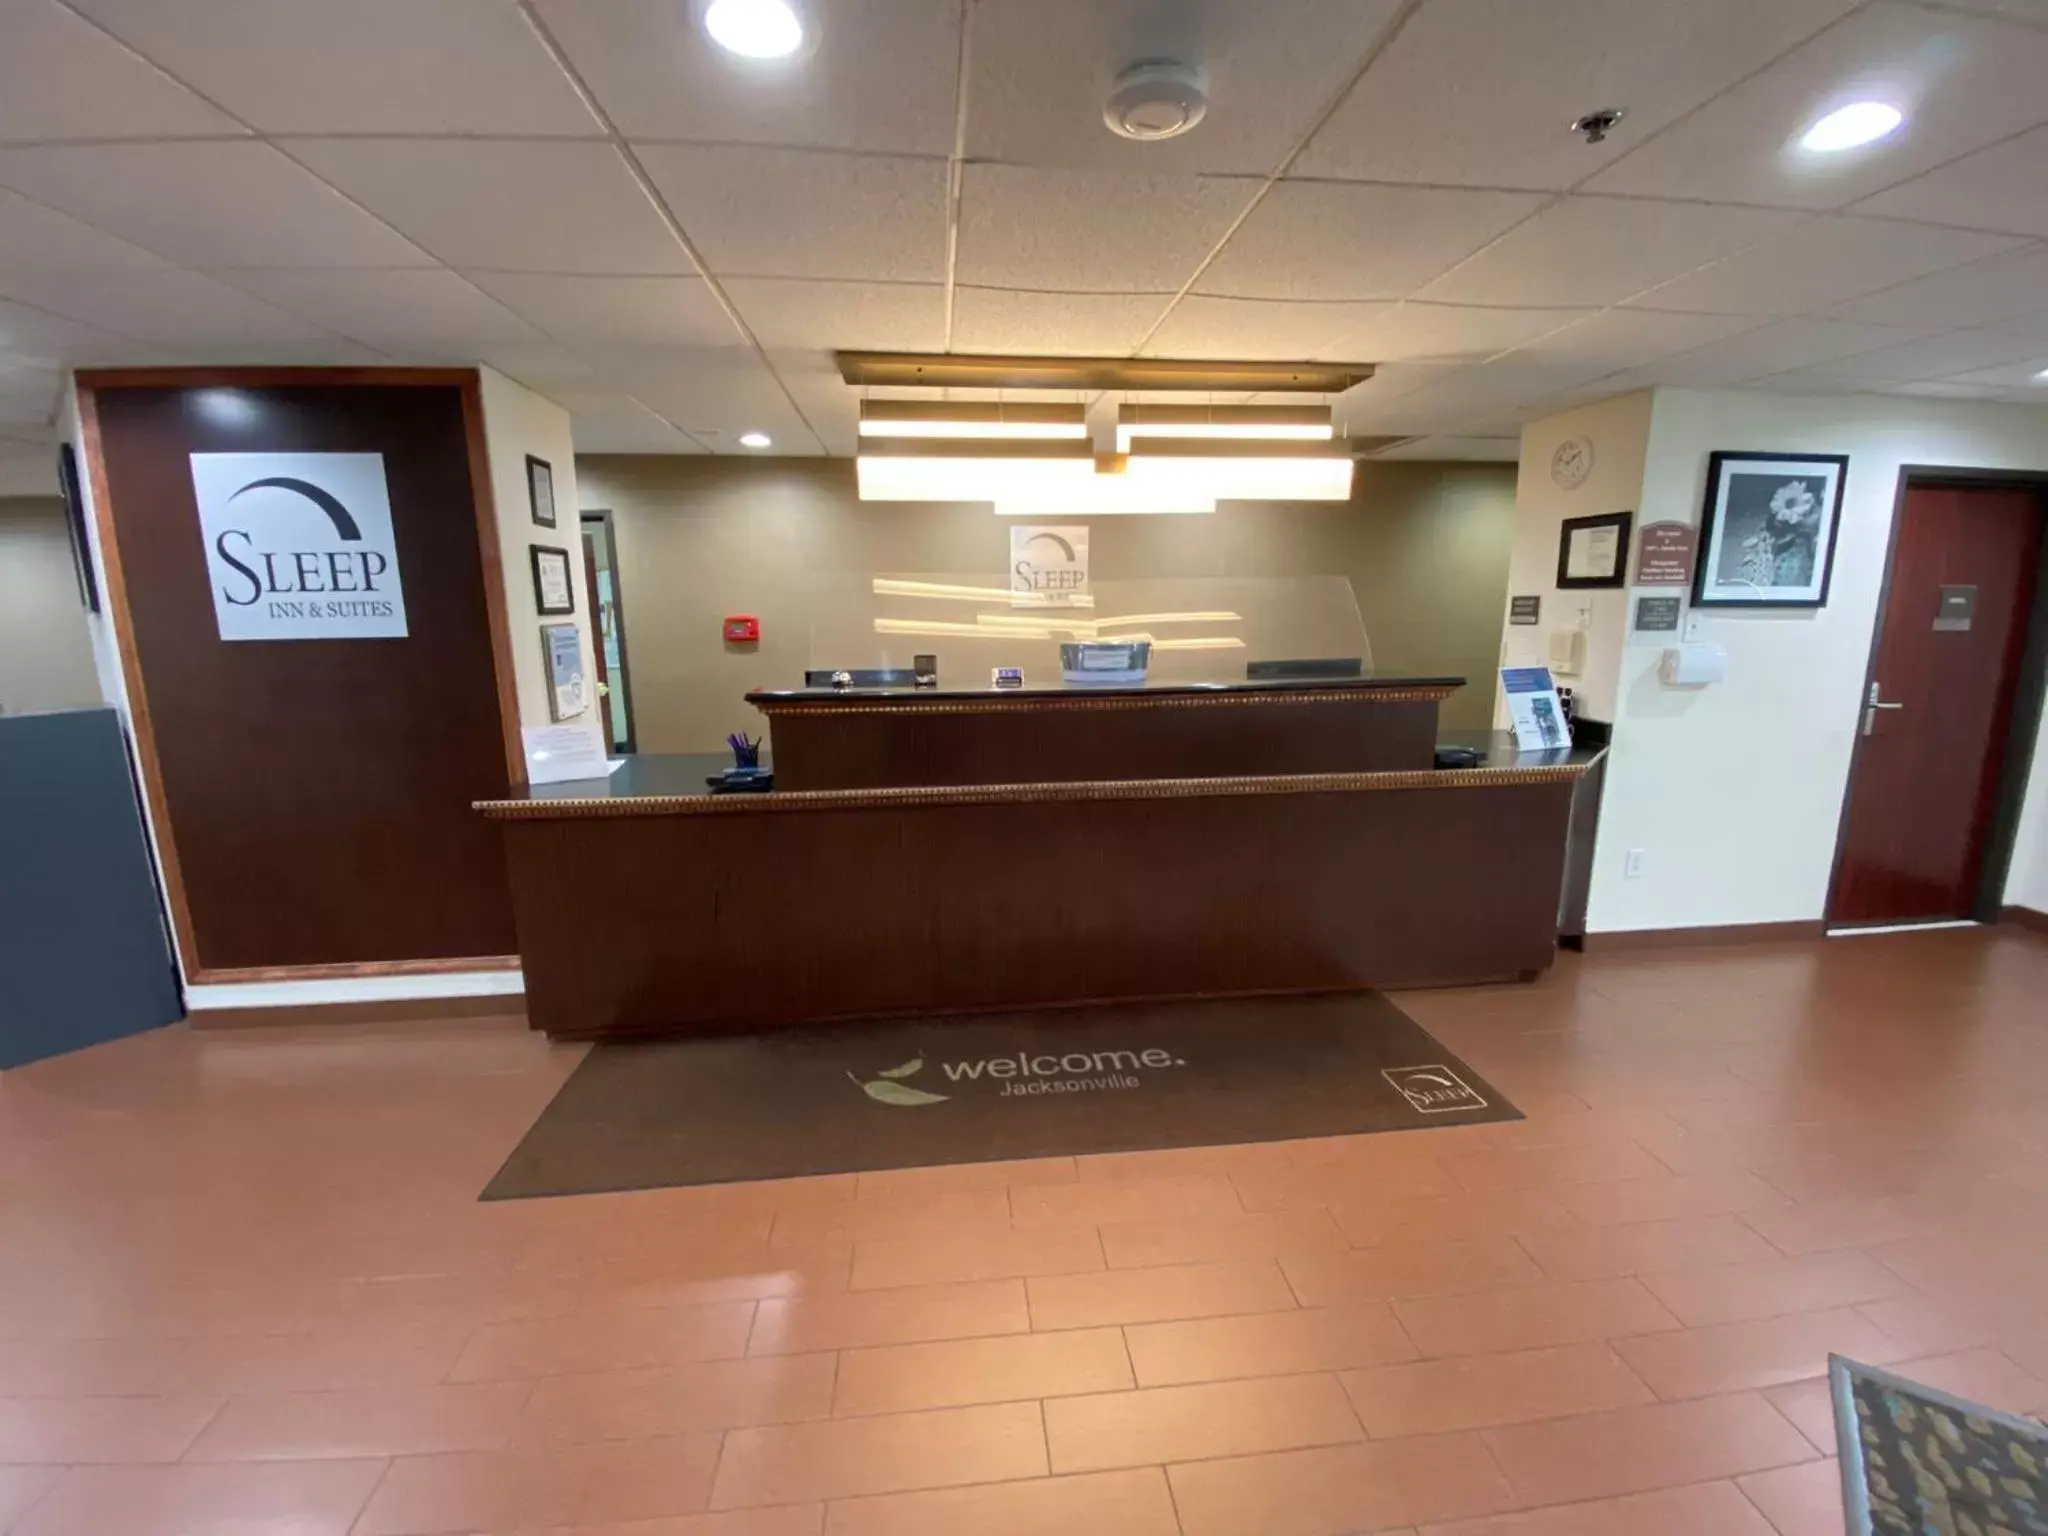 Lobby or reception, Lobby/Reception in Sleep Inn & Suites Jacksonville near Camp Lejeune